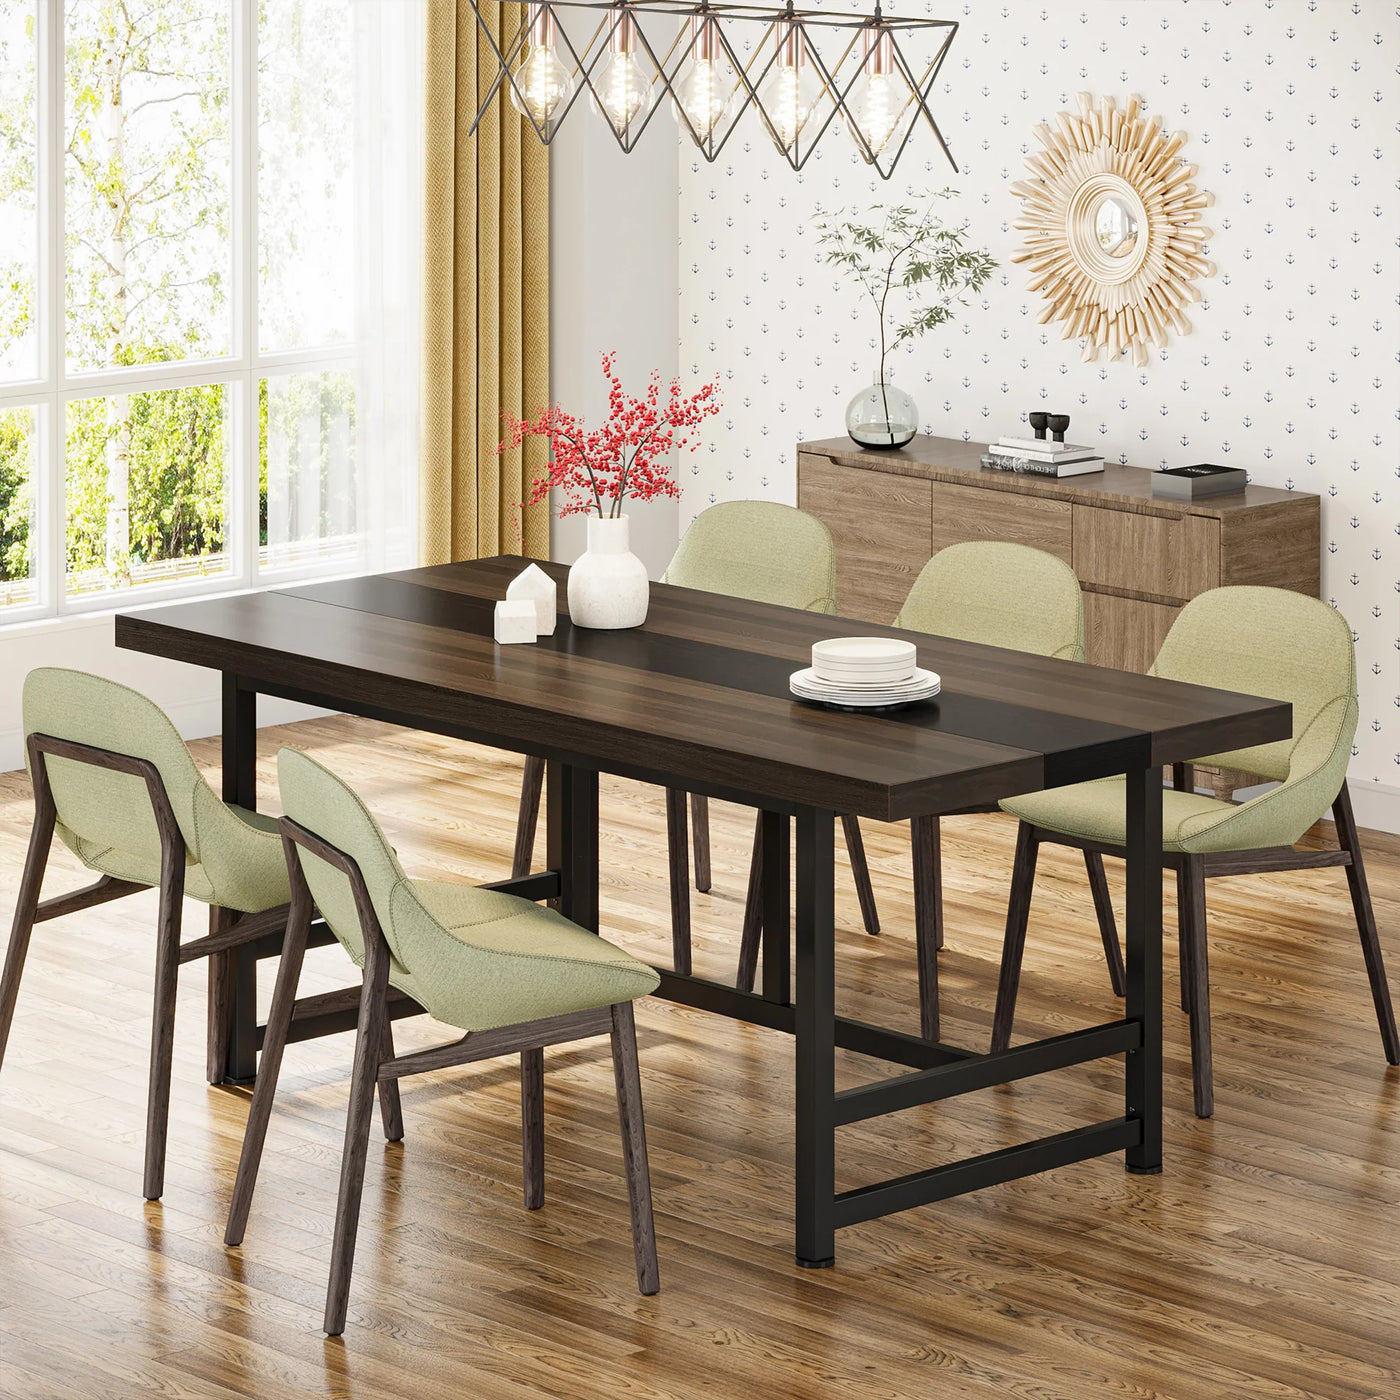 طاولة طعام تيرامو 6 أشخاص | طاولة للمنزل والمطبخ مقاس 70 بوصة مع سطح خشبي بإطار معدني